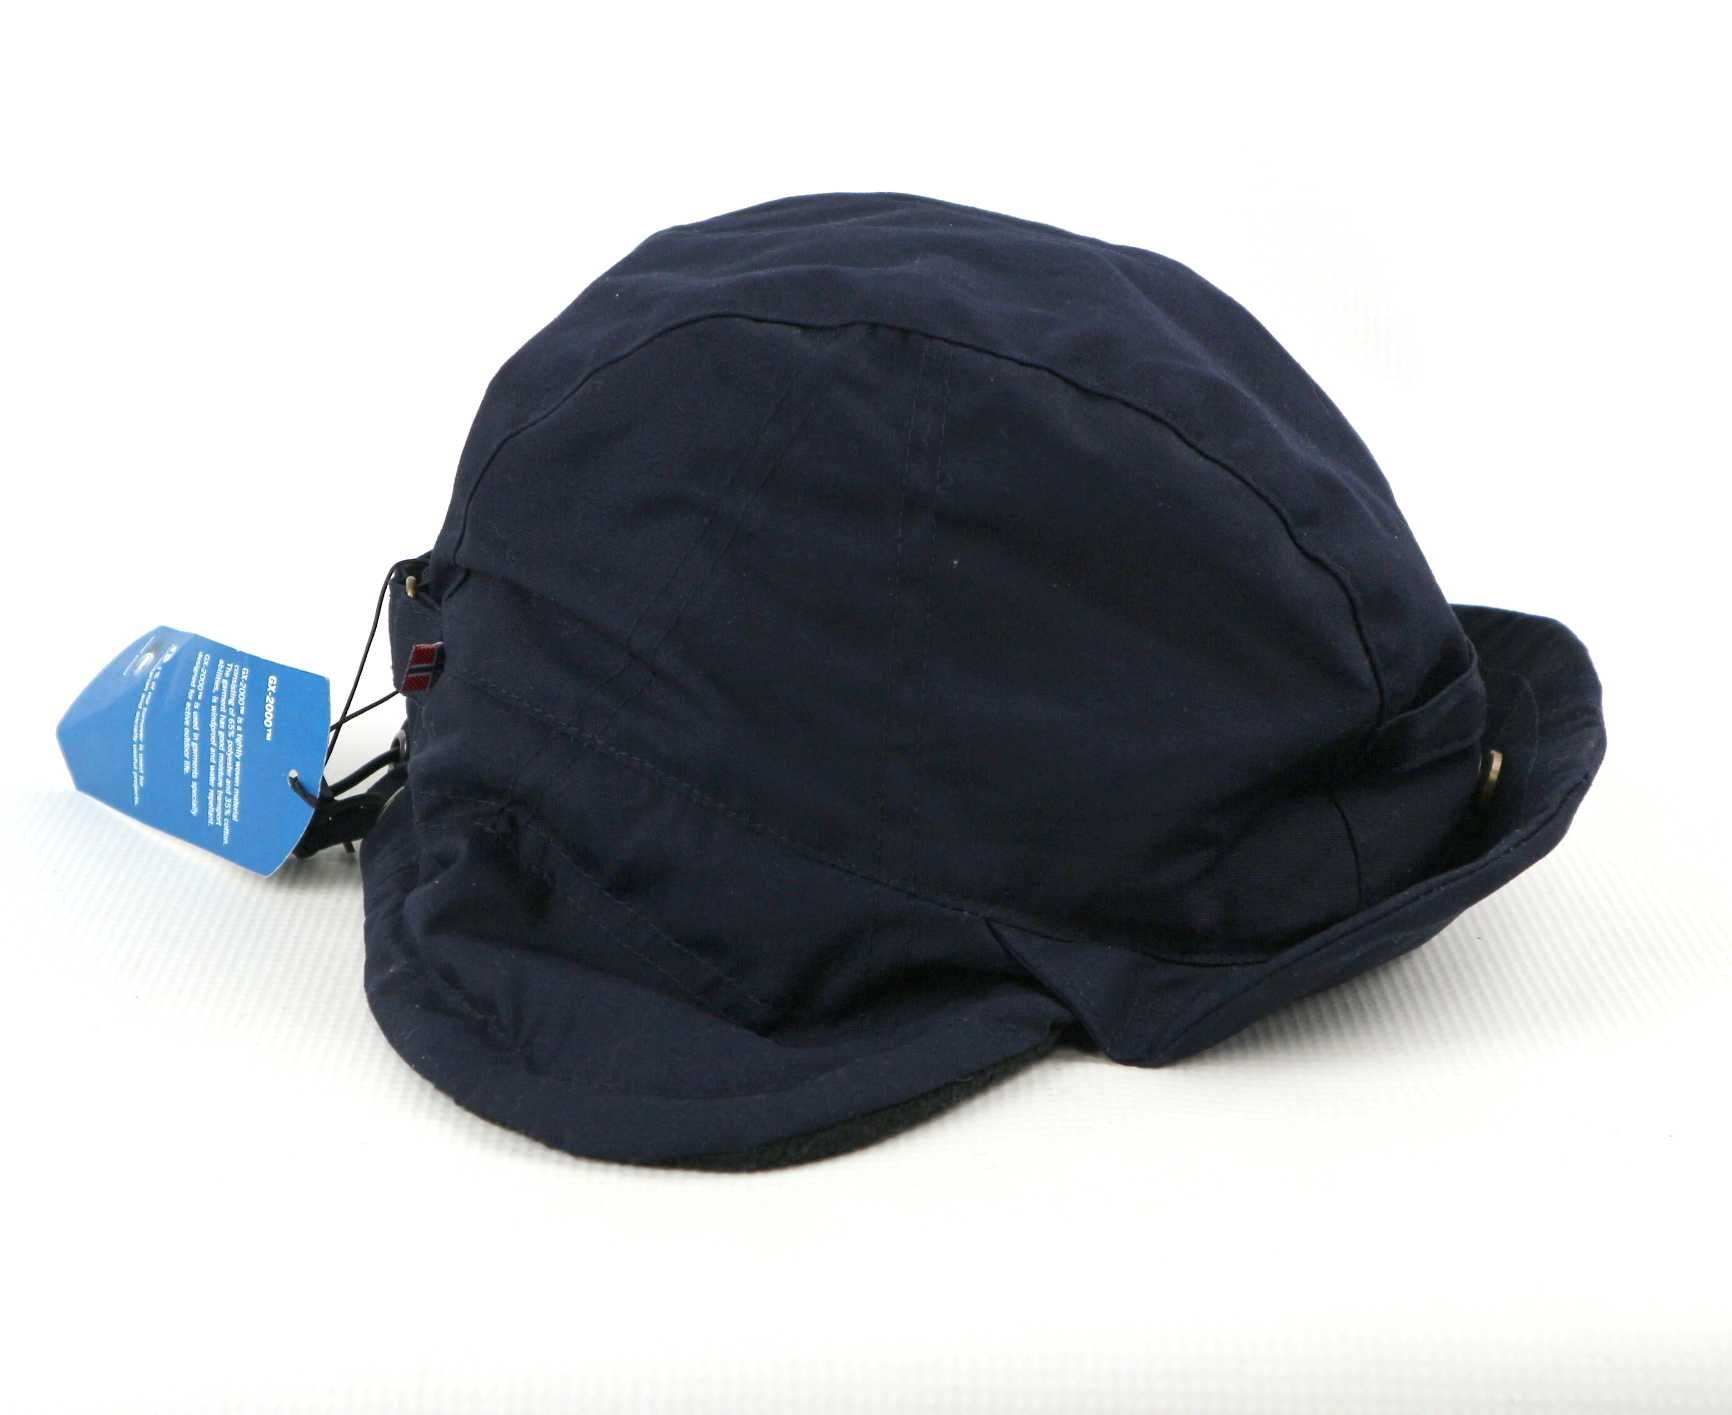 Stormberg Valdres Hat czapka turystyczna outdoorowa L